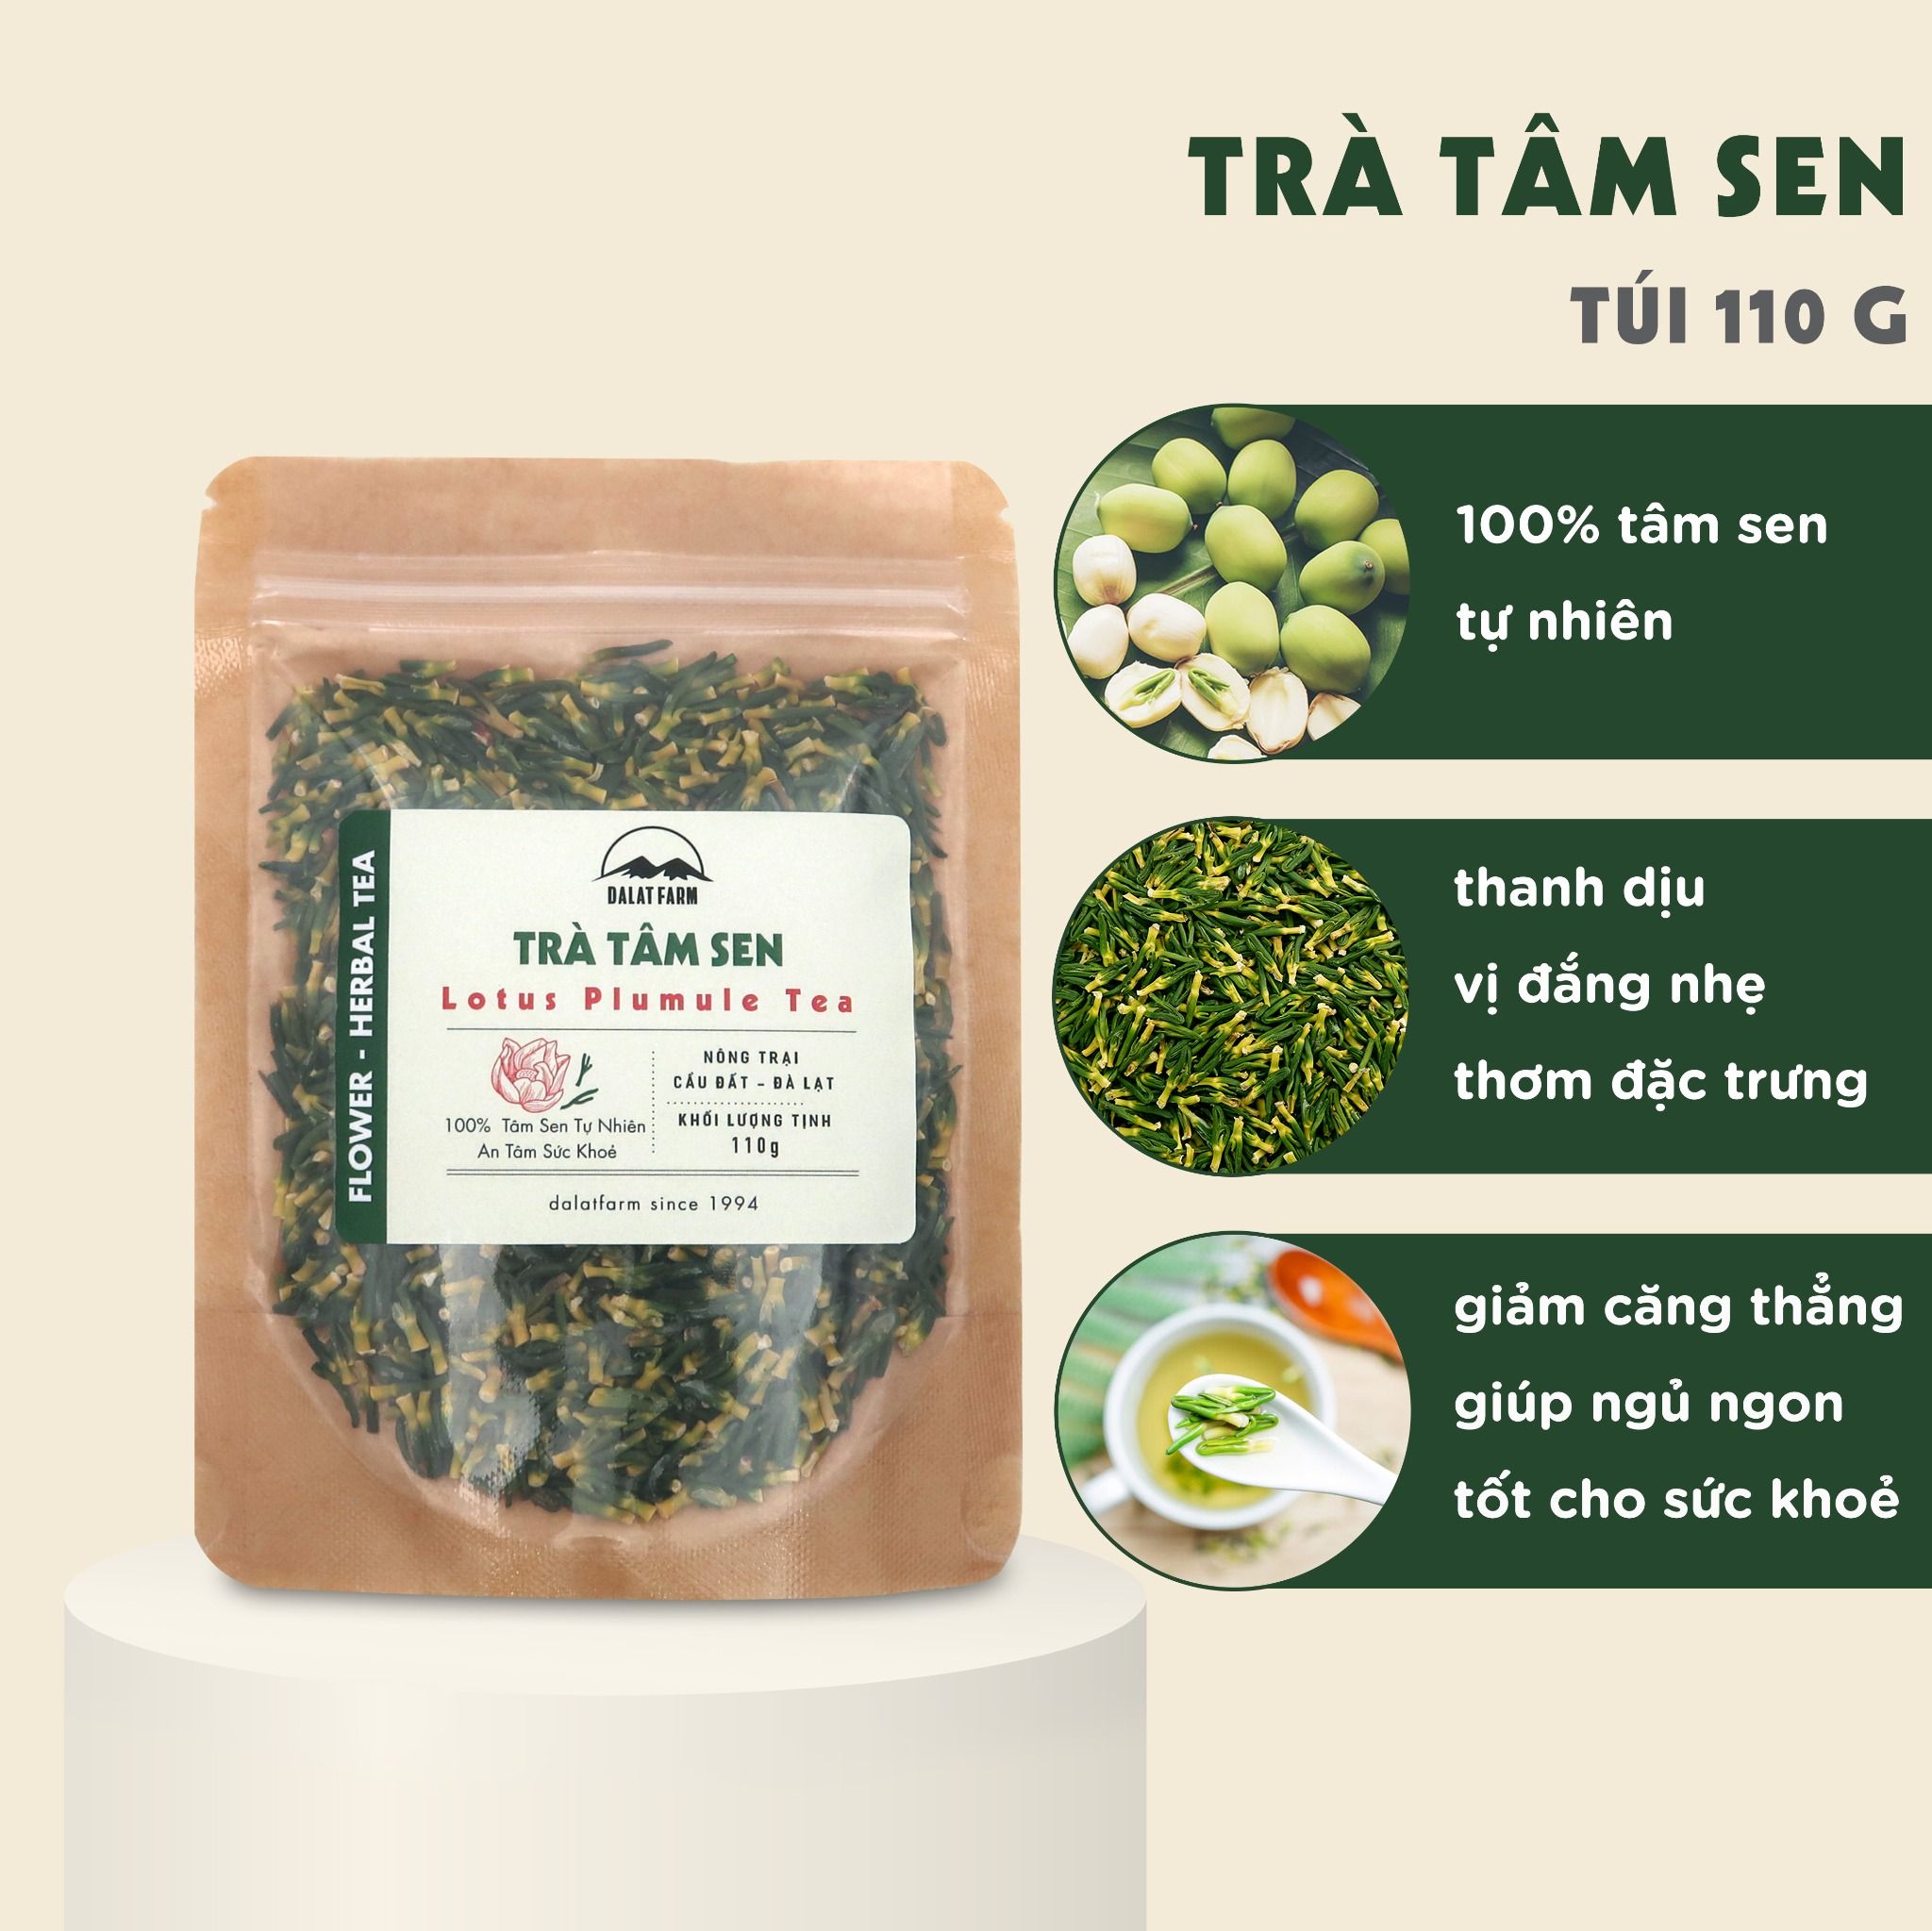  Trà Tâm Sen (Tim Sen) - Túi 110 g 